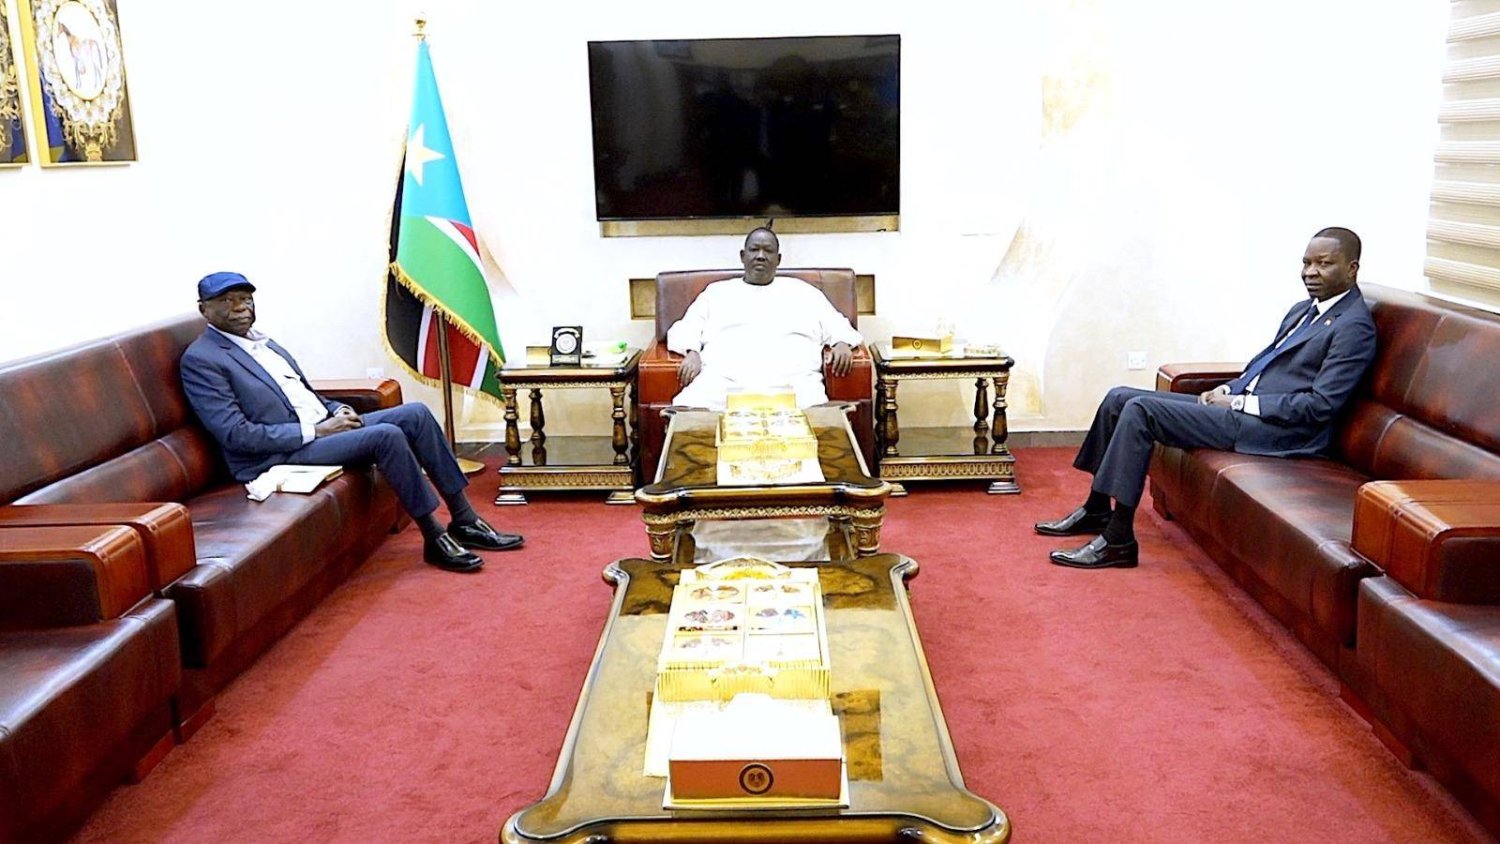 كباشي (يمين) والحلو (يسار) في جوبا بحضور توت قلواك مستشار الرئيس سلفا كير (وكالة الأنباء السودانية)